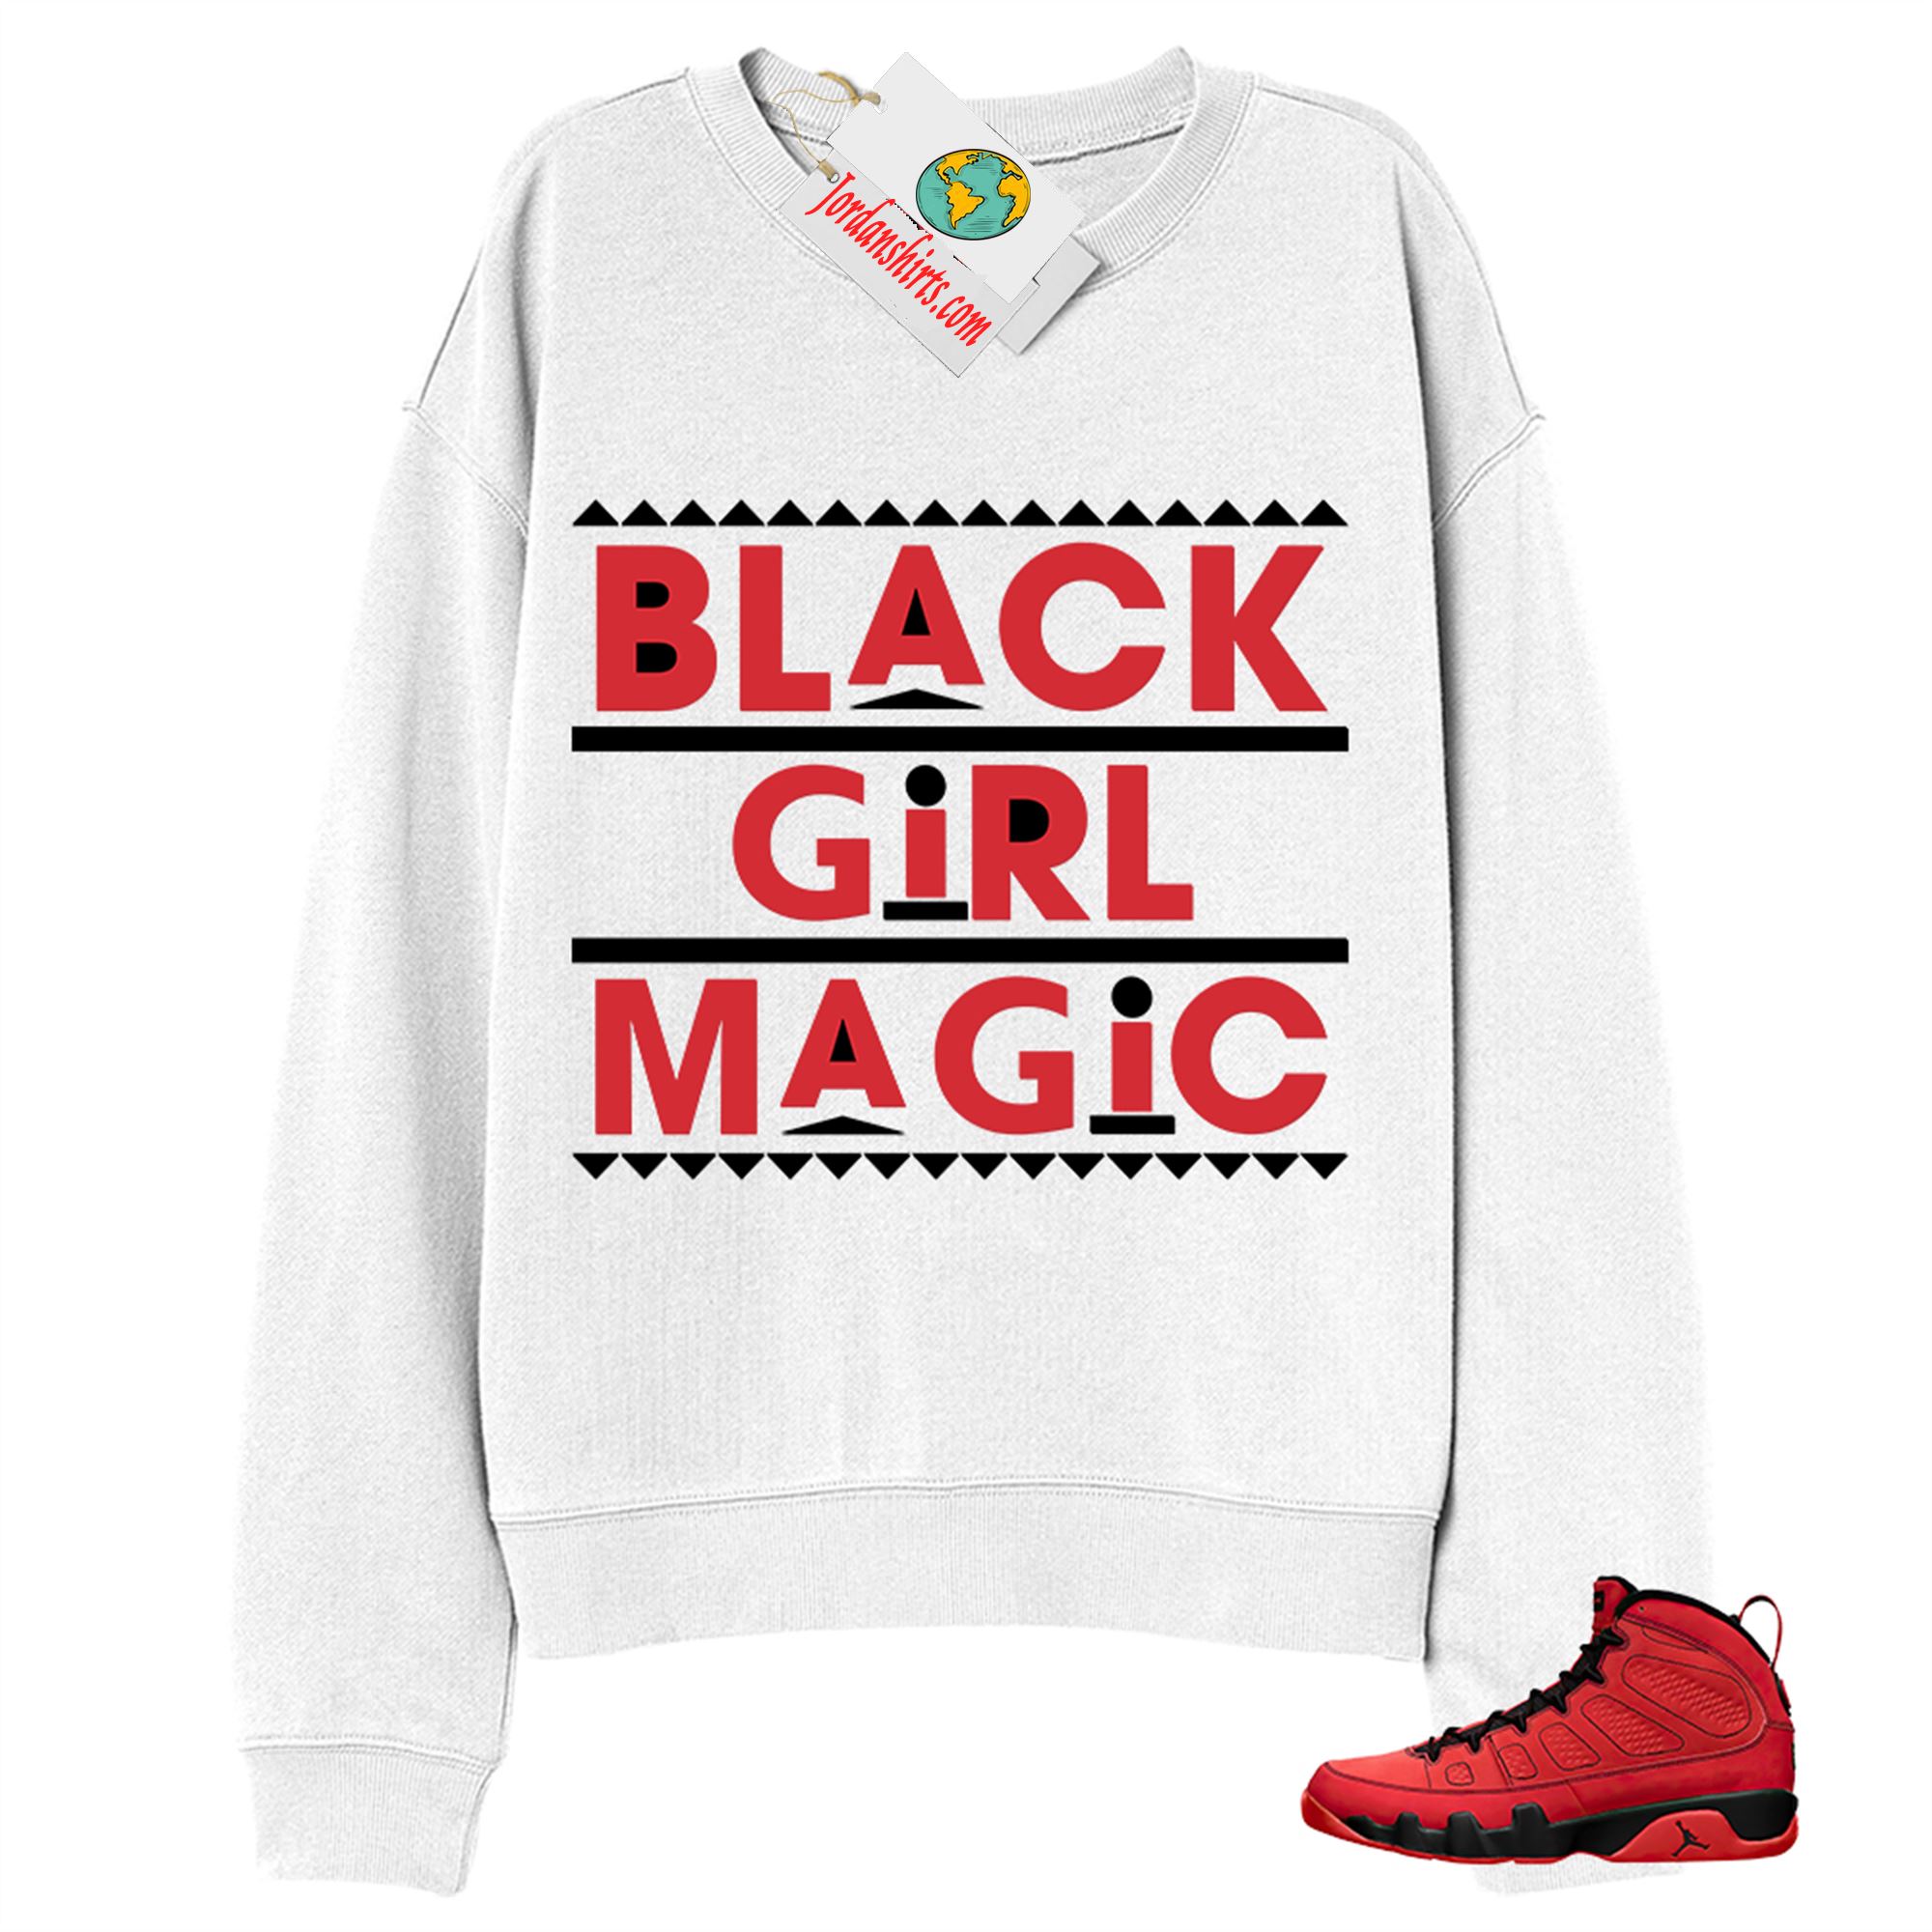 Jordan 9 Sweatshirt, Black Girl Magic White Sweatshirt Air Jordan 9 Chile Red 9s Size Up To 5xl